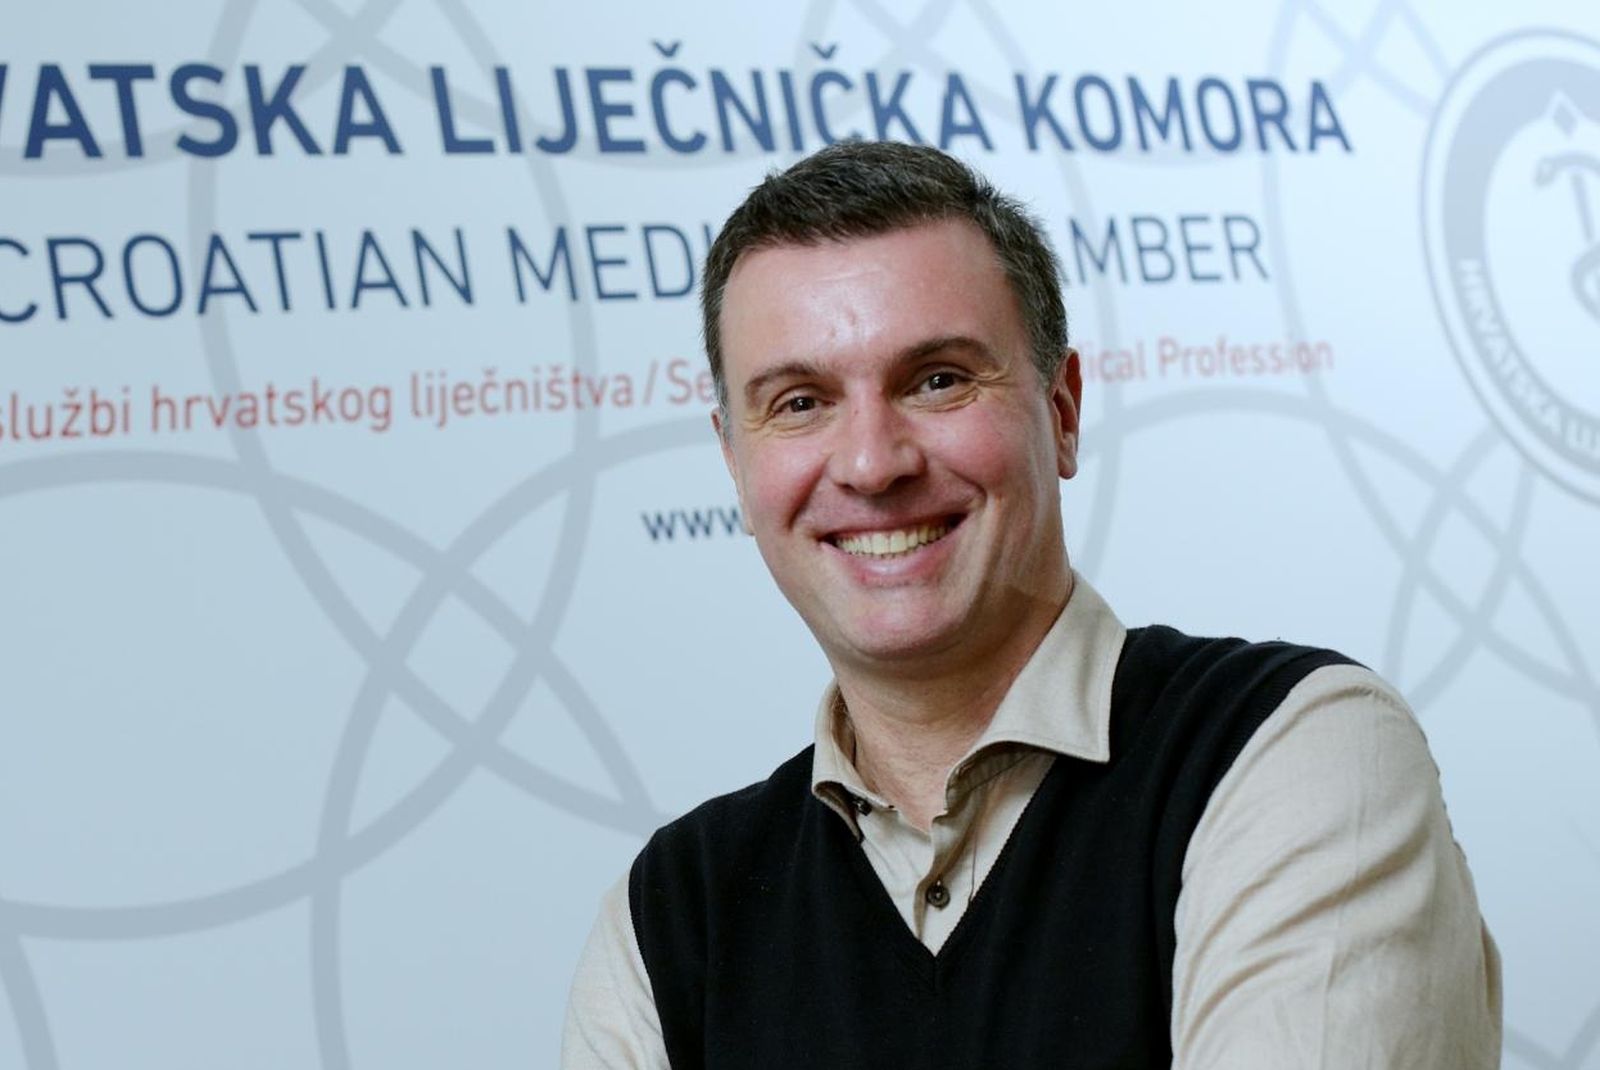 12.09.2017., Zagreb - Doktor Trpimir Goluza, predsjednik Hrvatske lijecnicke komore. 
Photo: Zarko Basic/PIXSELL